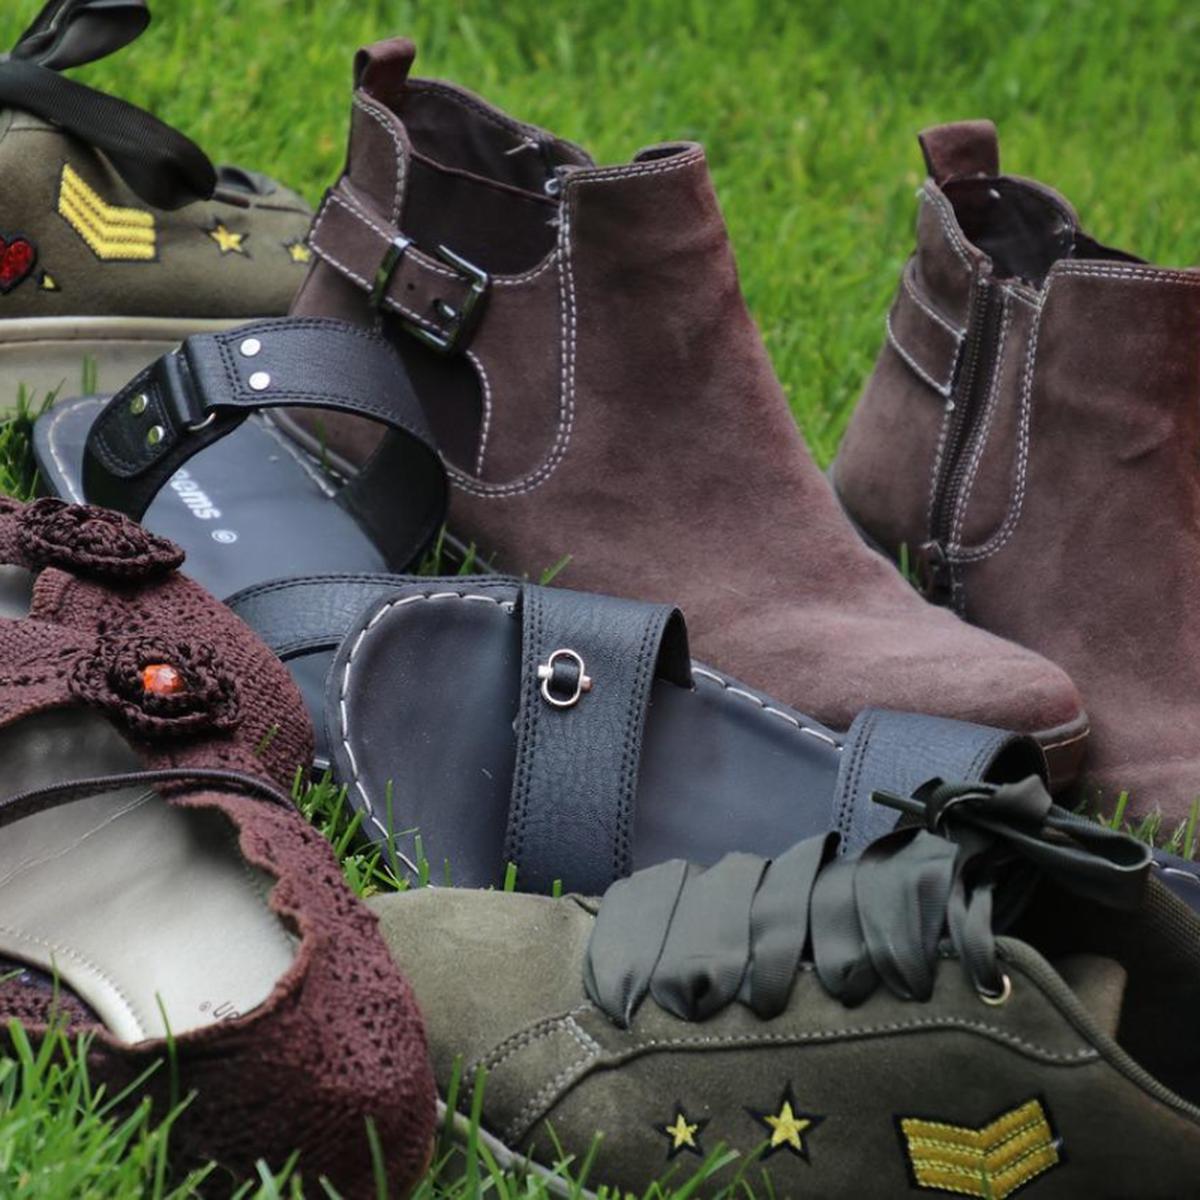 Trucos caseros para el hogar: cómo zapatos de gamuza mojados | remedios-hacks | RESPUESTAS | MAG.